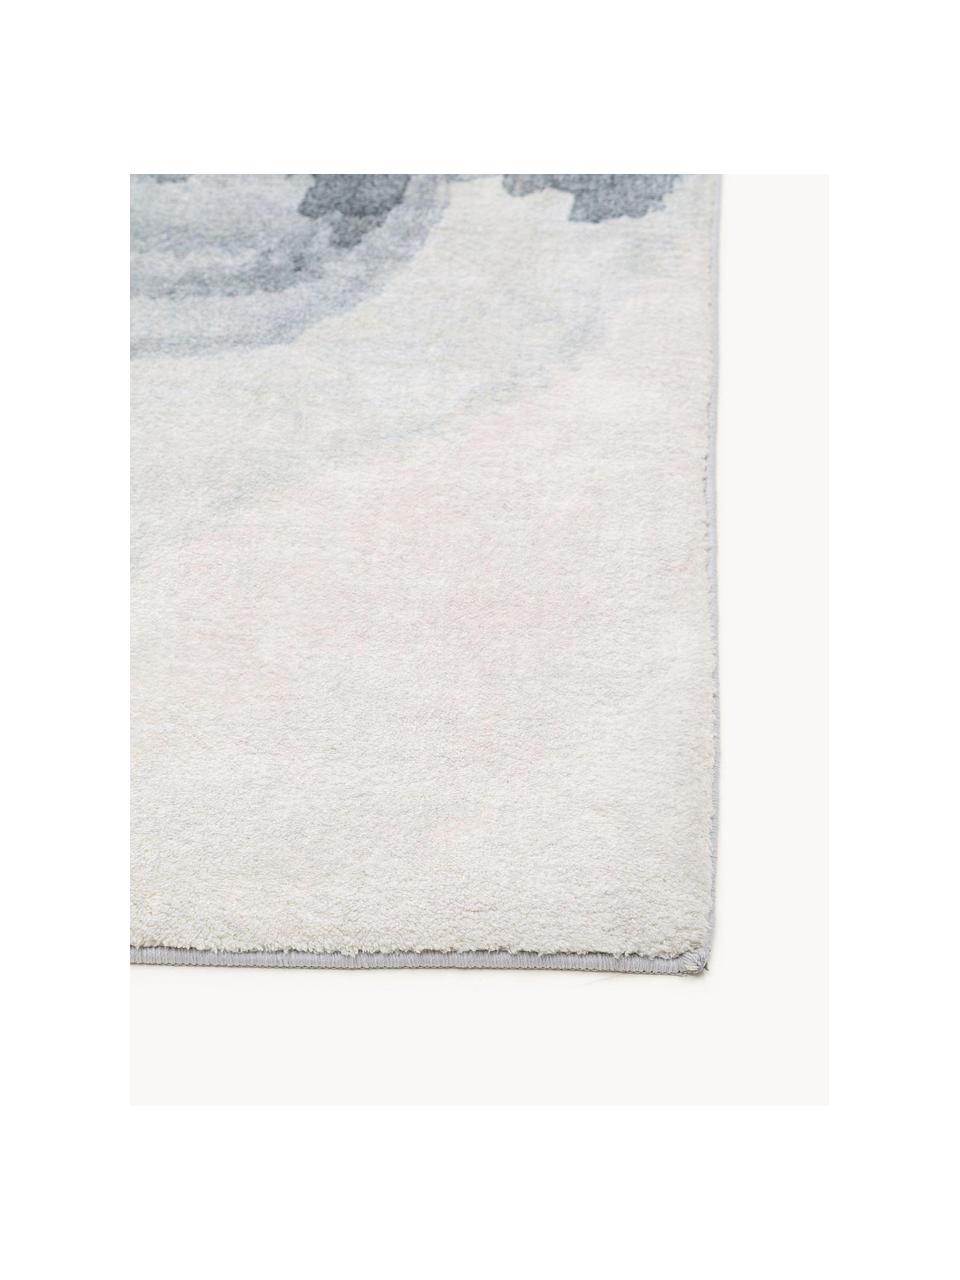 Kurzflor-Teppich Mara, 100 % Polyester, Grautöne, Weiß, B 120 x L 170 cm (Größe S)